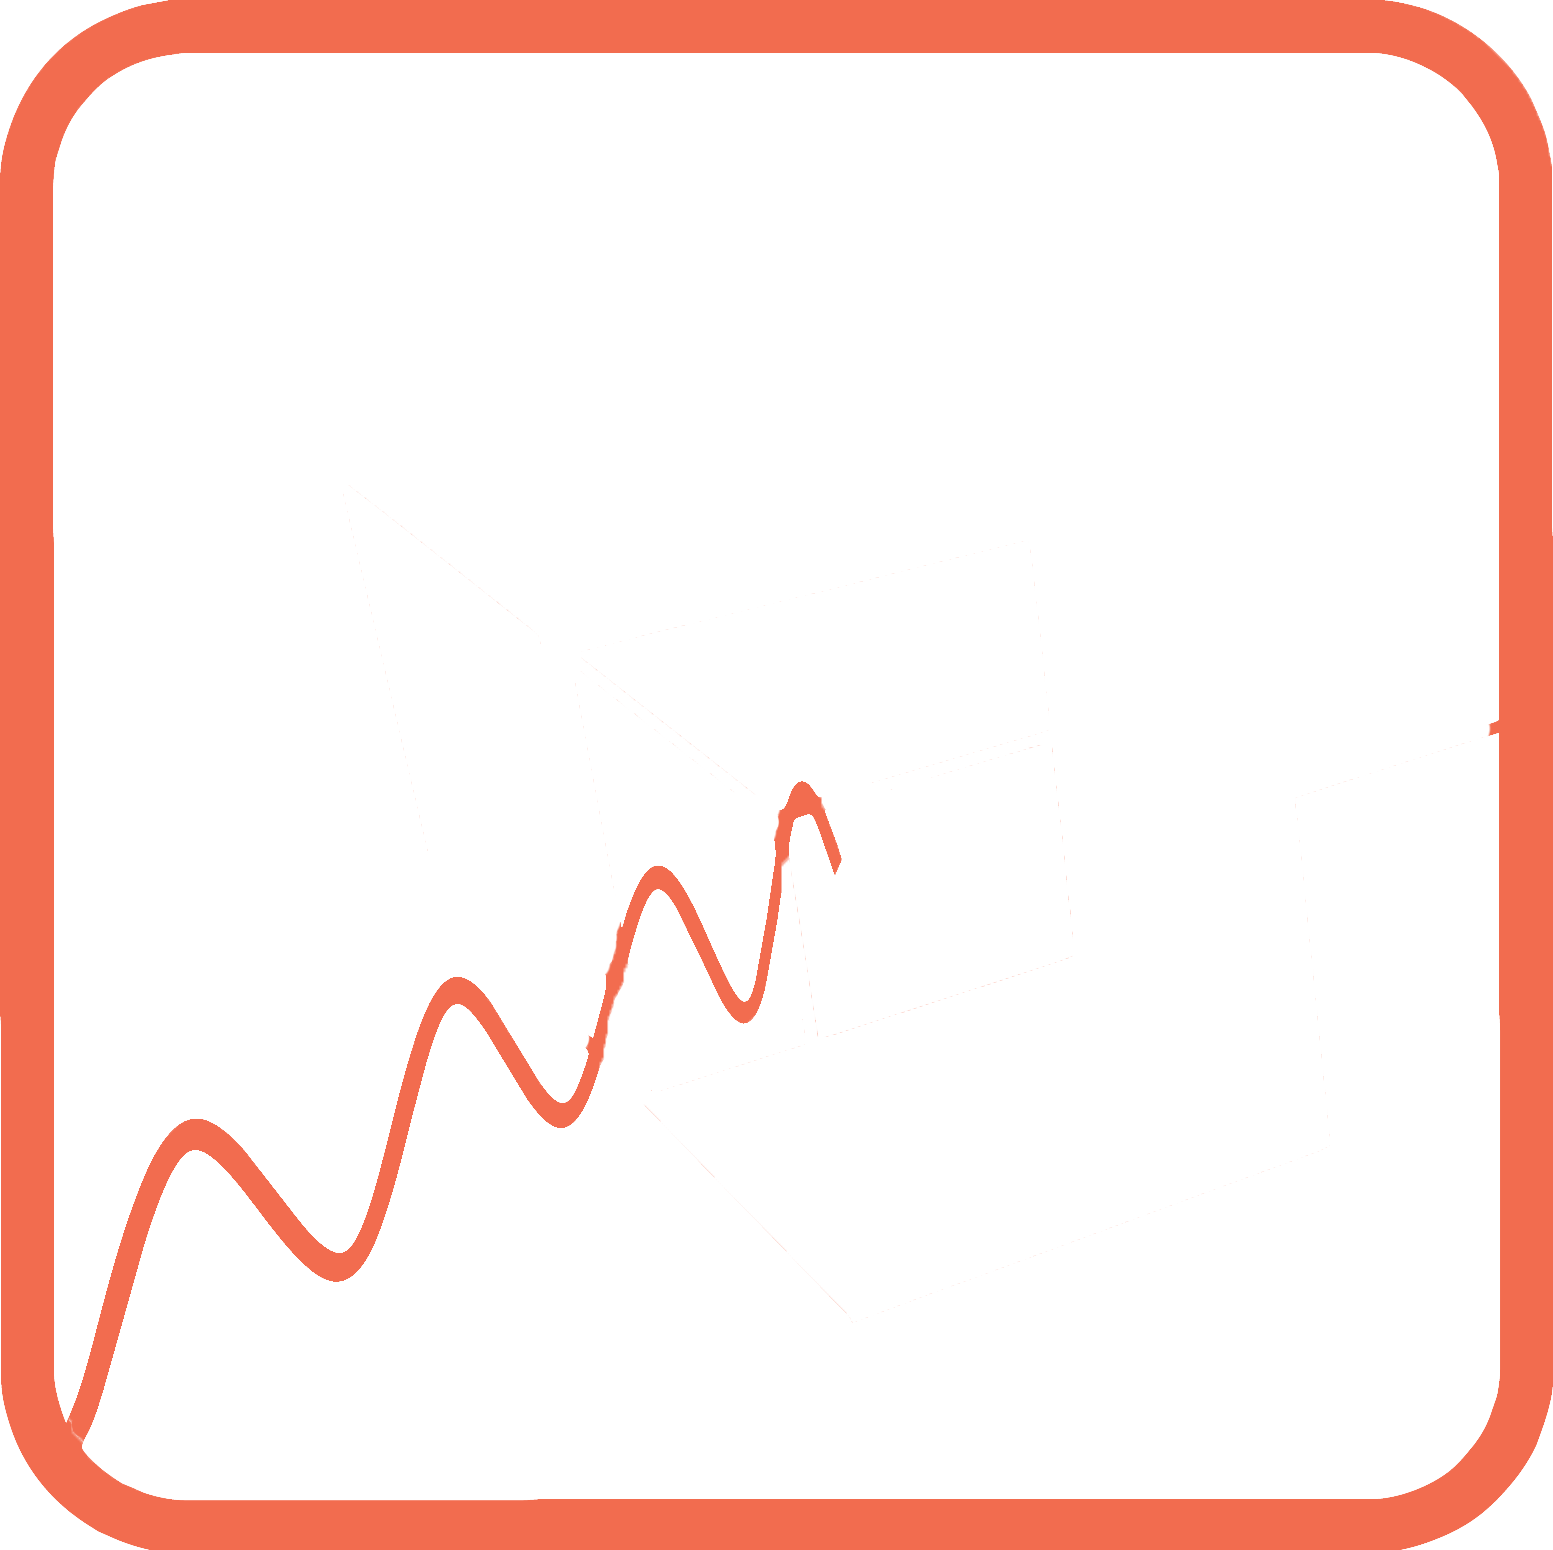 Detector Modelling Workshop 2021 (DeMo)